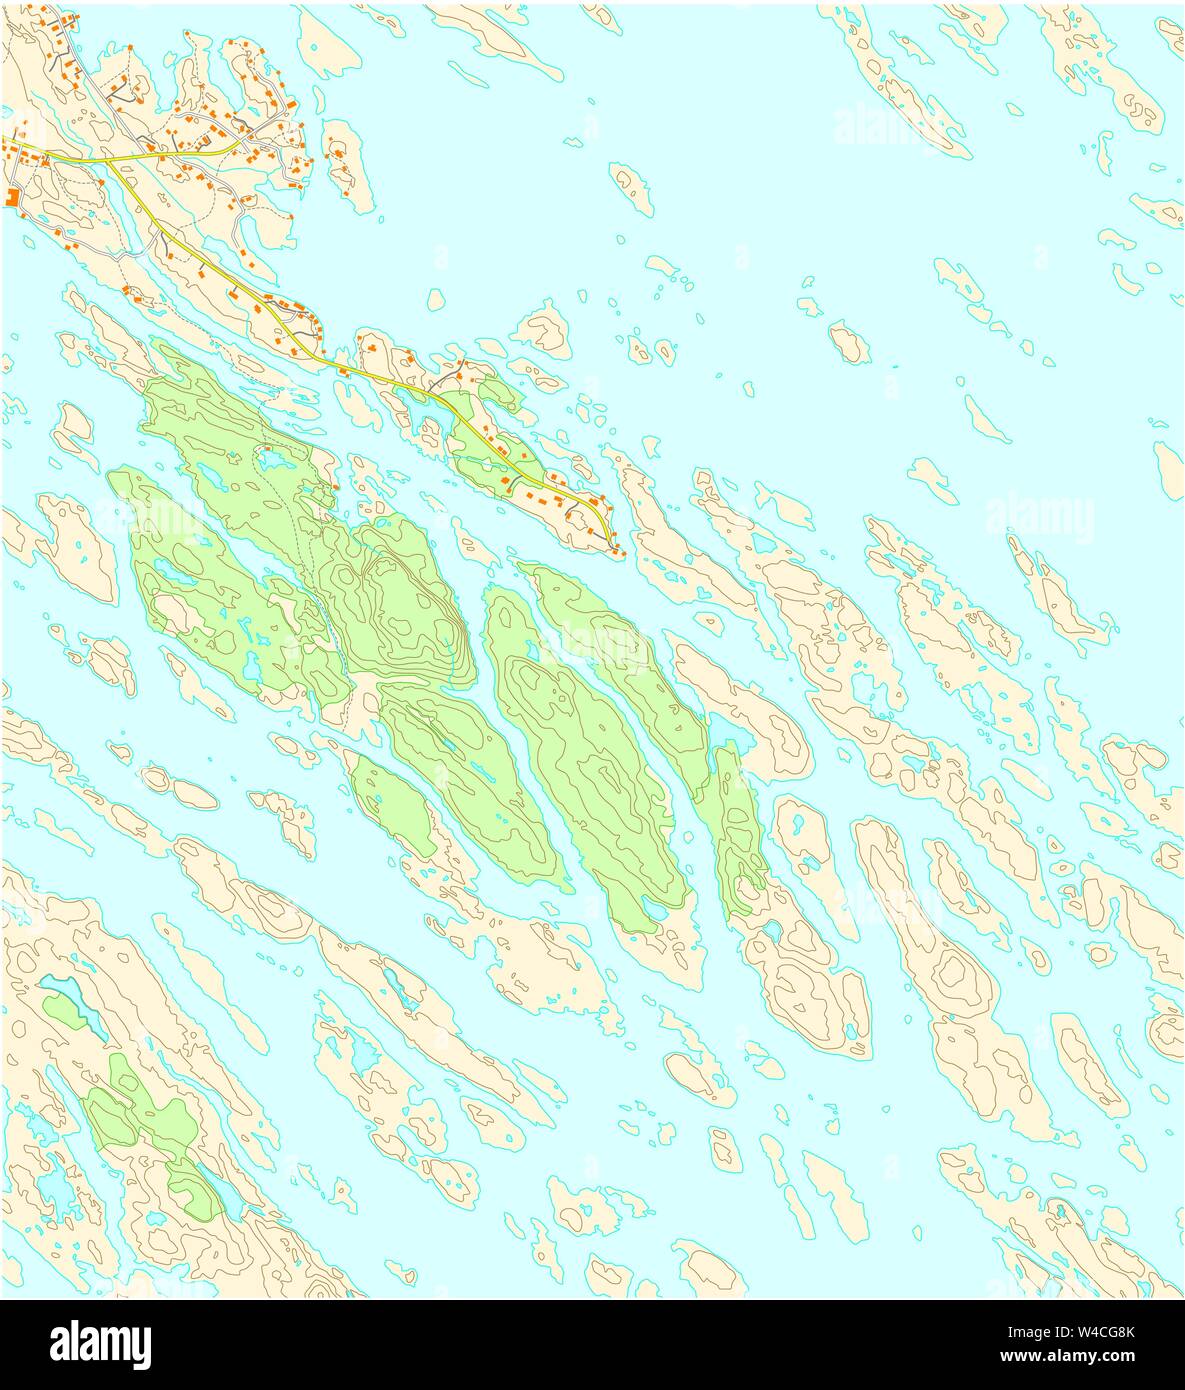 Mapa topográfico de la imaginaria del territorio, con ríos, lagos, bosques y caminos Ilustración del Vector